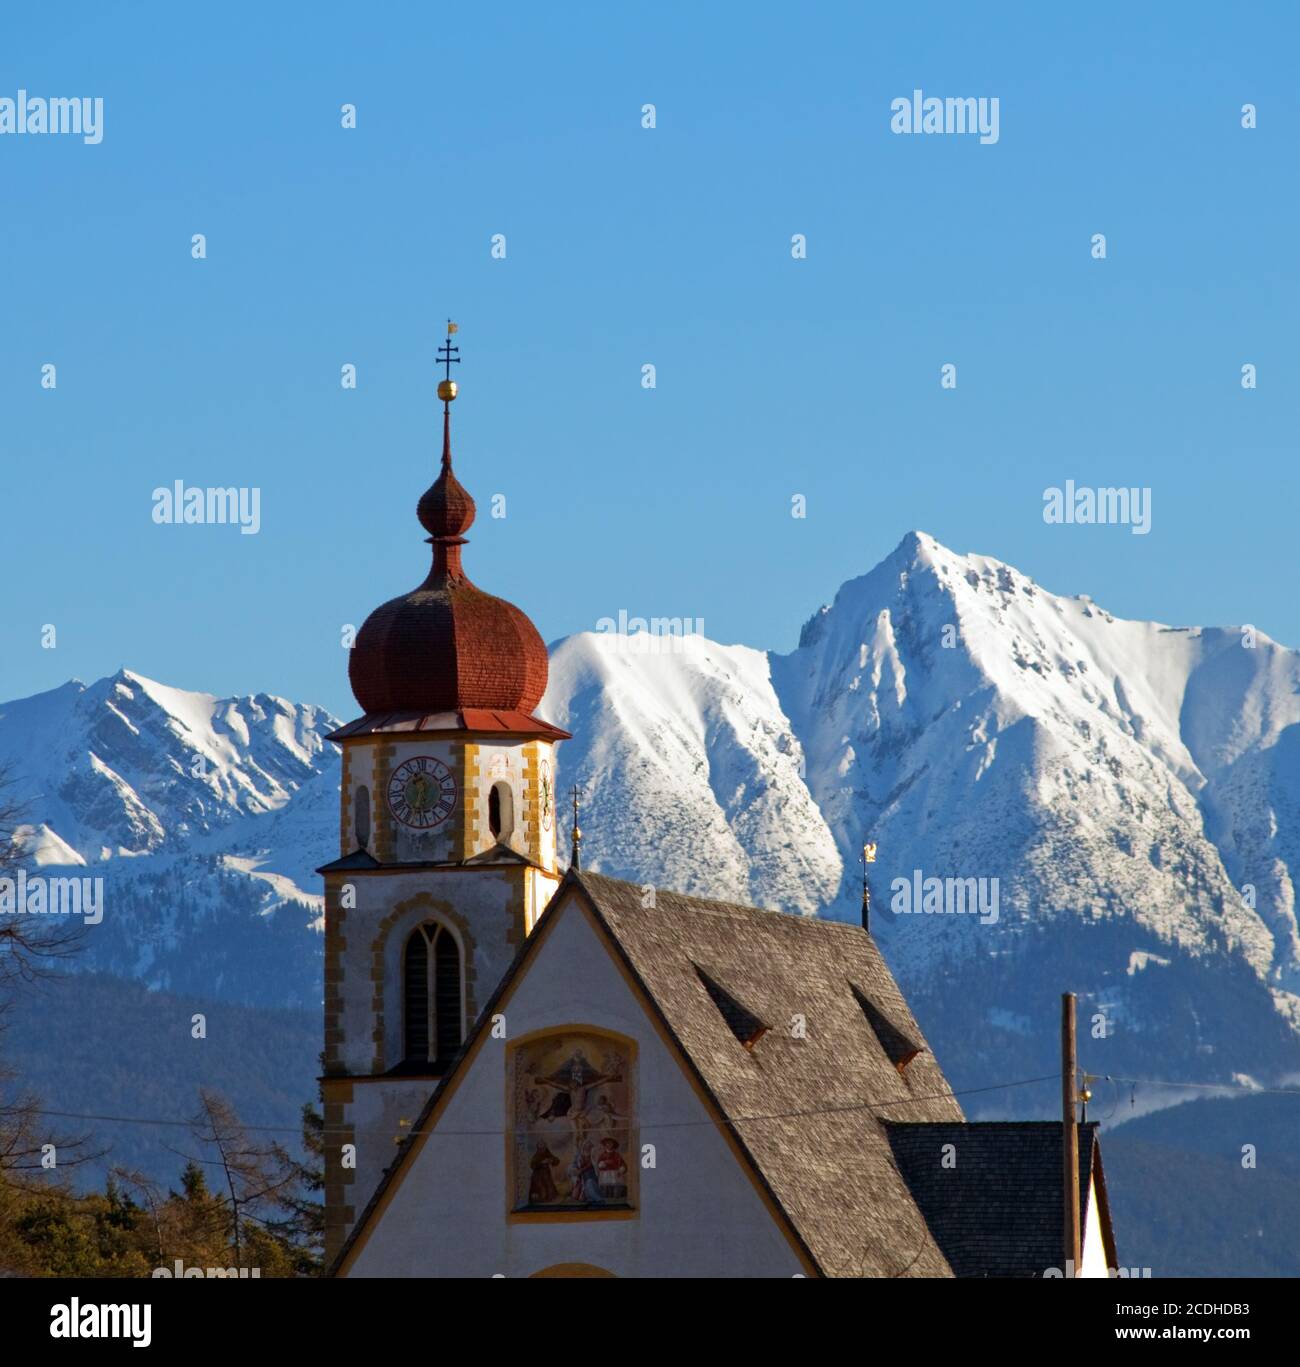 Paysages d'hiver alpin dans l'église Banque D'Images